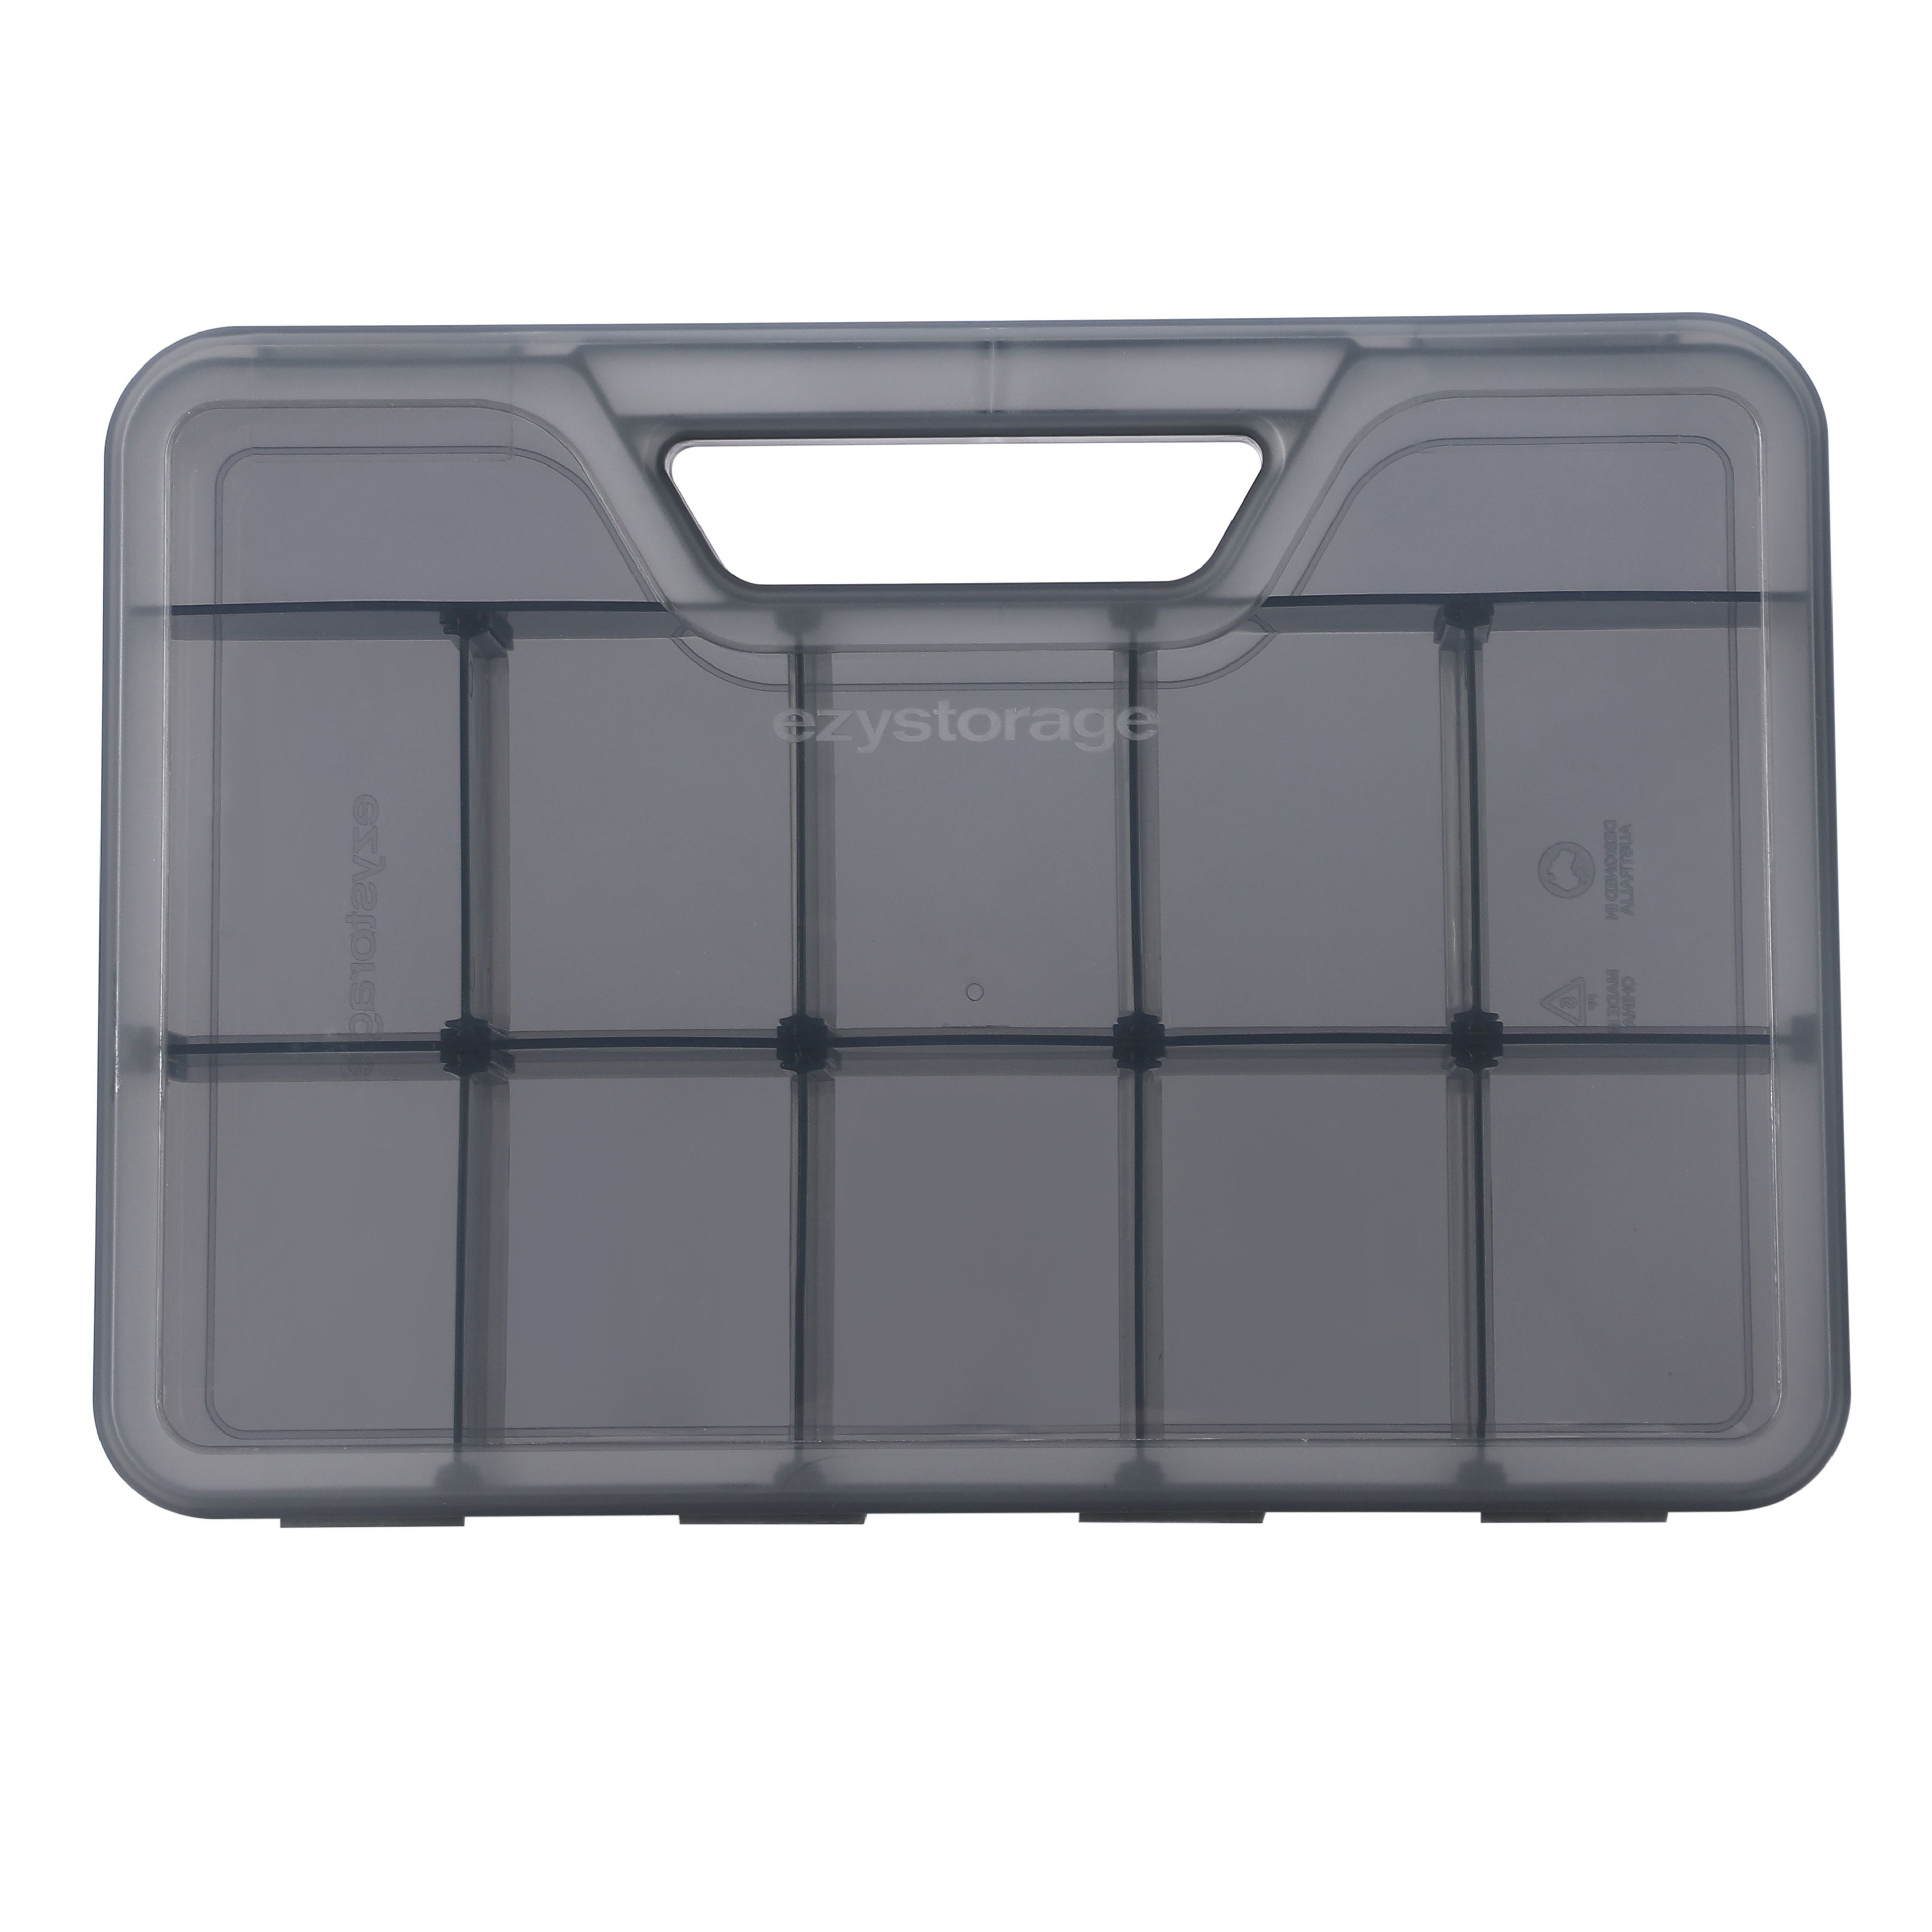 Ezy Storage Multi Purpose 12 Compartment Box Clear - Mambo's